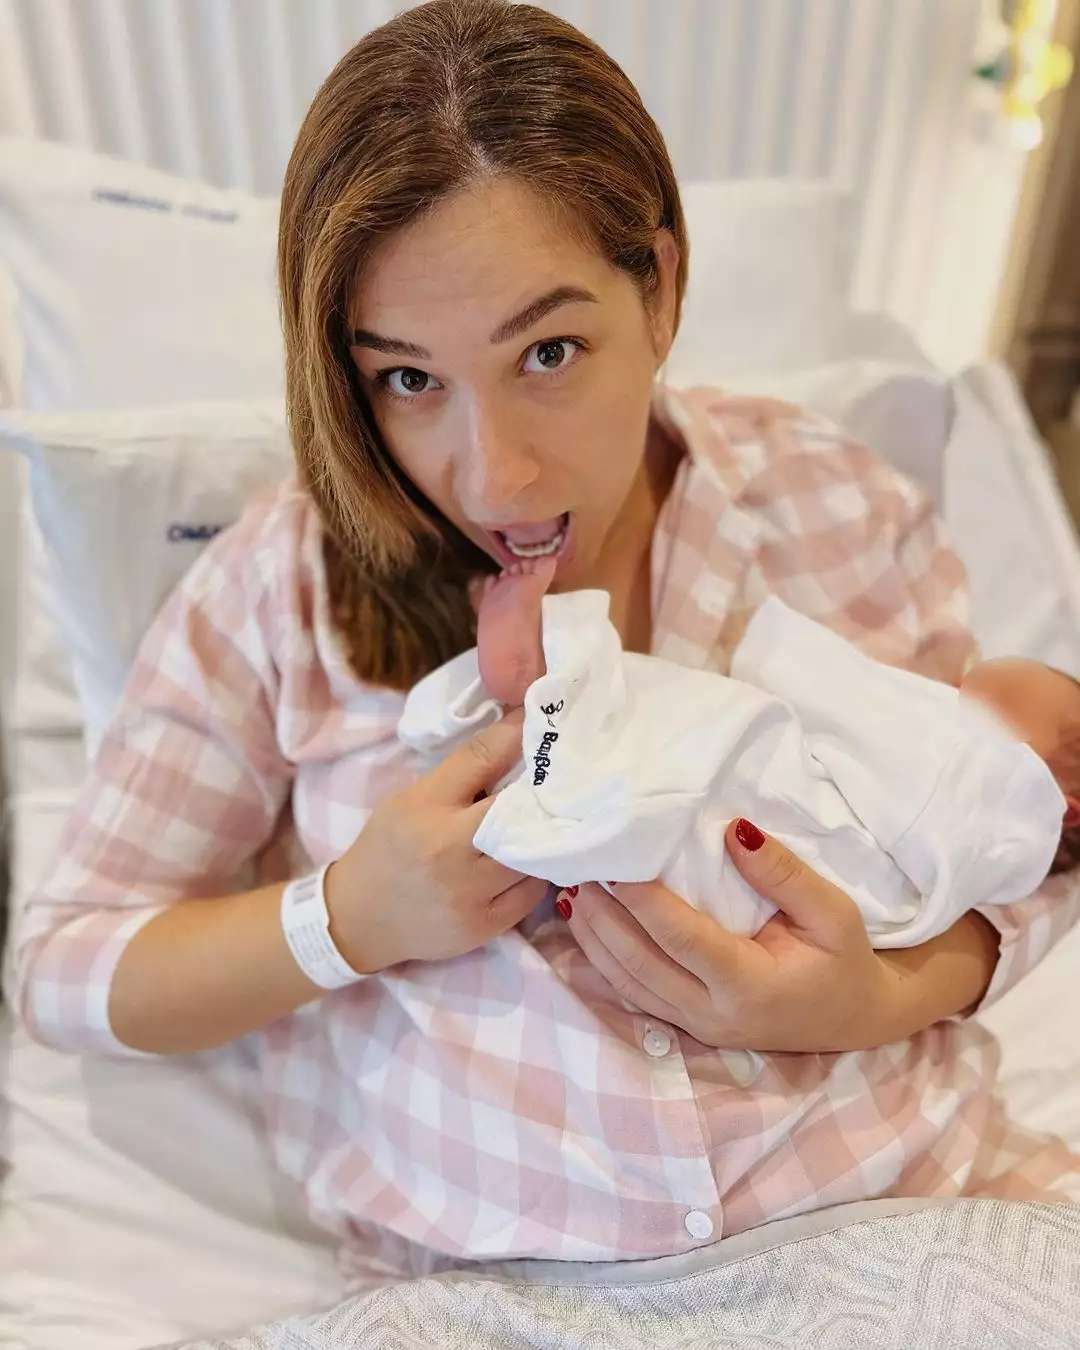 Αντιγόνη Ψυχράμη: Οι πρώτες ΦΩΤΟ από το μαιευτήριο με την νεογέννητη κόρη της